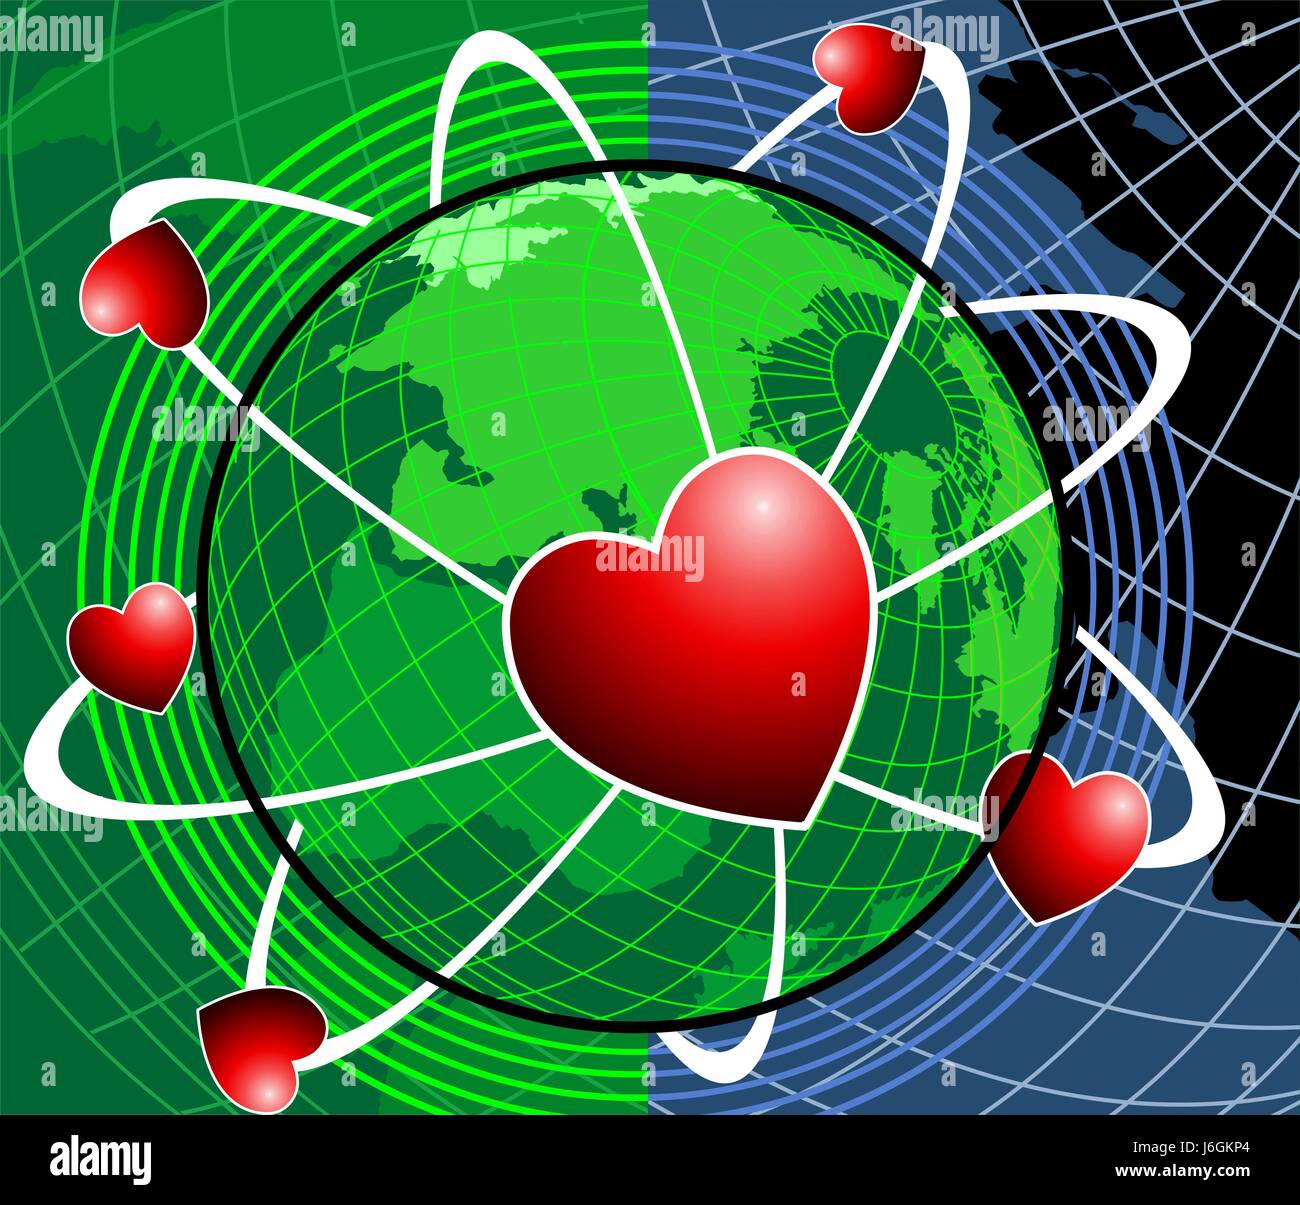 Muster Globus Planet Erde Welt Umlaufbahn Band Band Band  Konstruktionszeichnung Herz Stockfotografie - Alamy